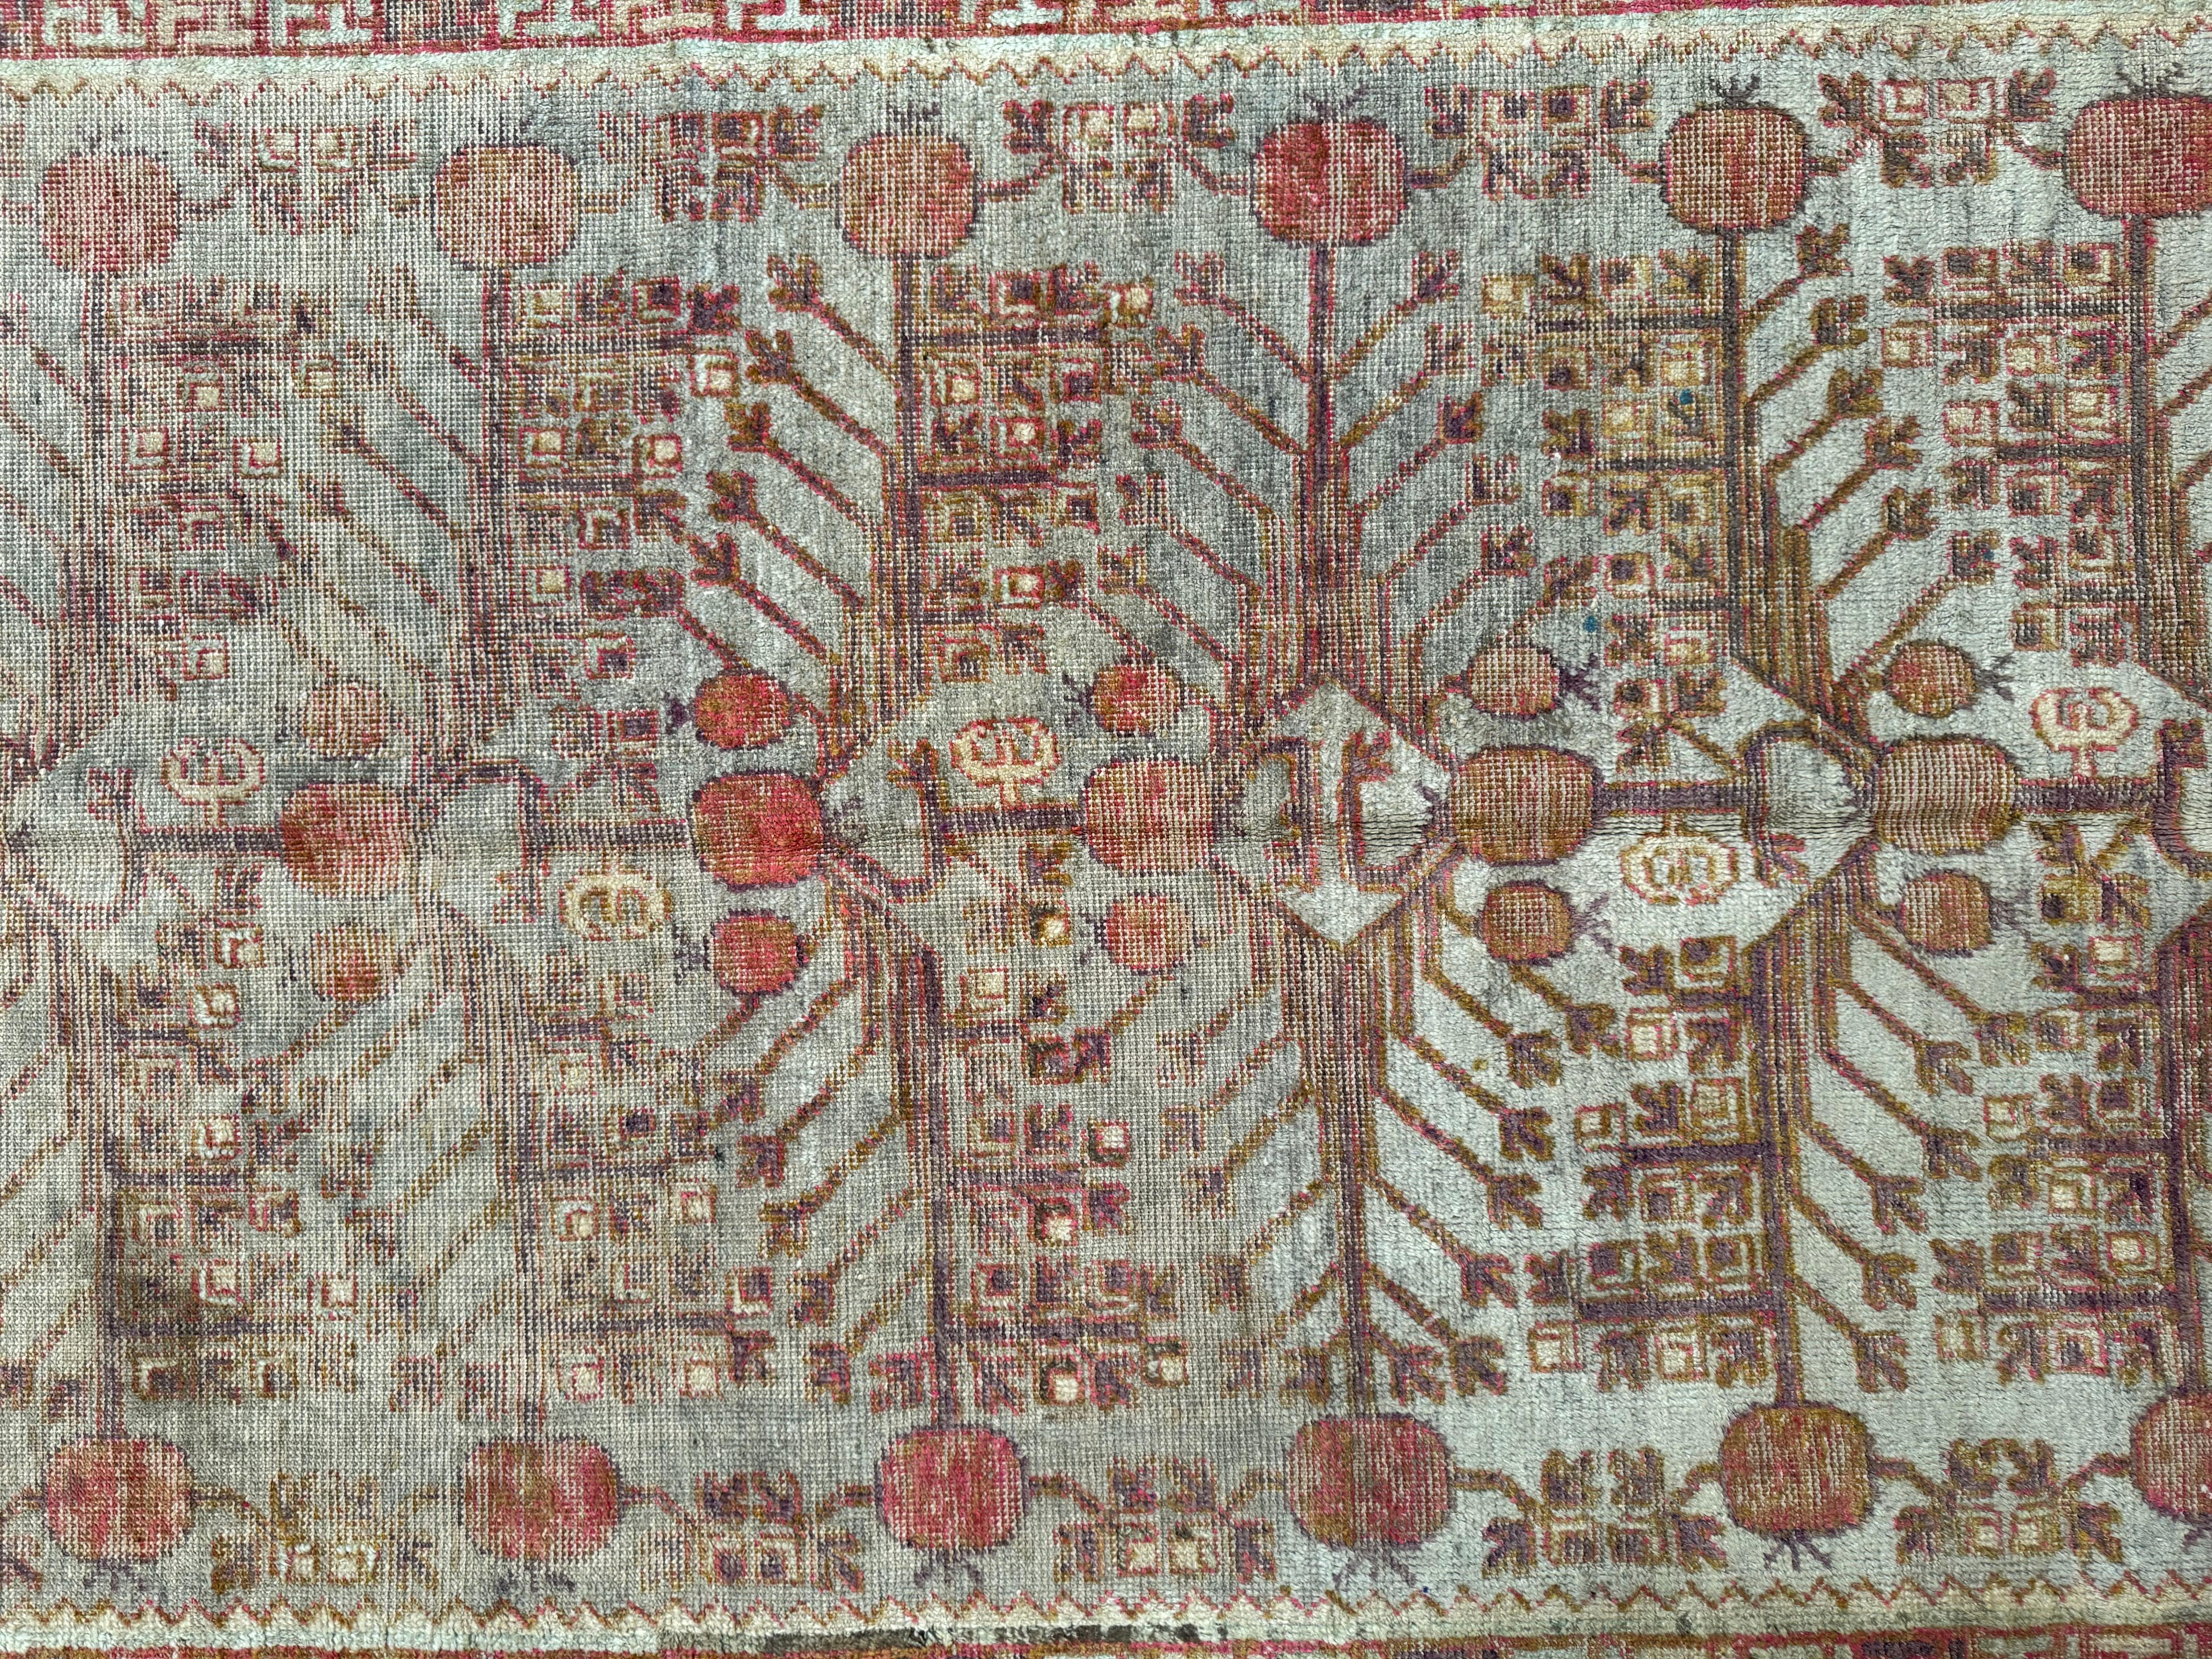 Découvrez une beauté intemporelle avec ce tapis Samarkand antique du XIXe siècle, d'une dimension de 9,9' x 5,0'. Ses motifs complexes et ses couleurs classiques rehaussent tout décor américain, offrant un mélange harmonieux d'allure historique et